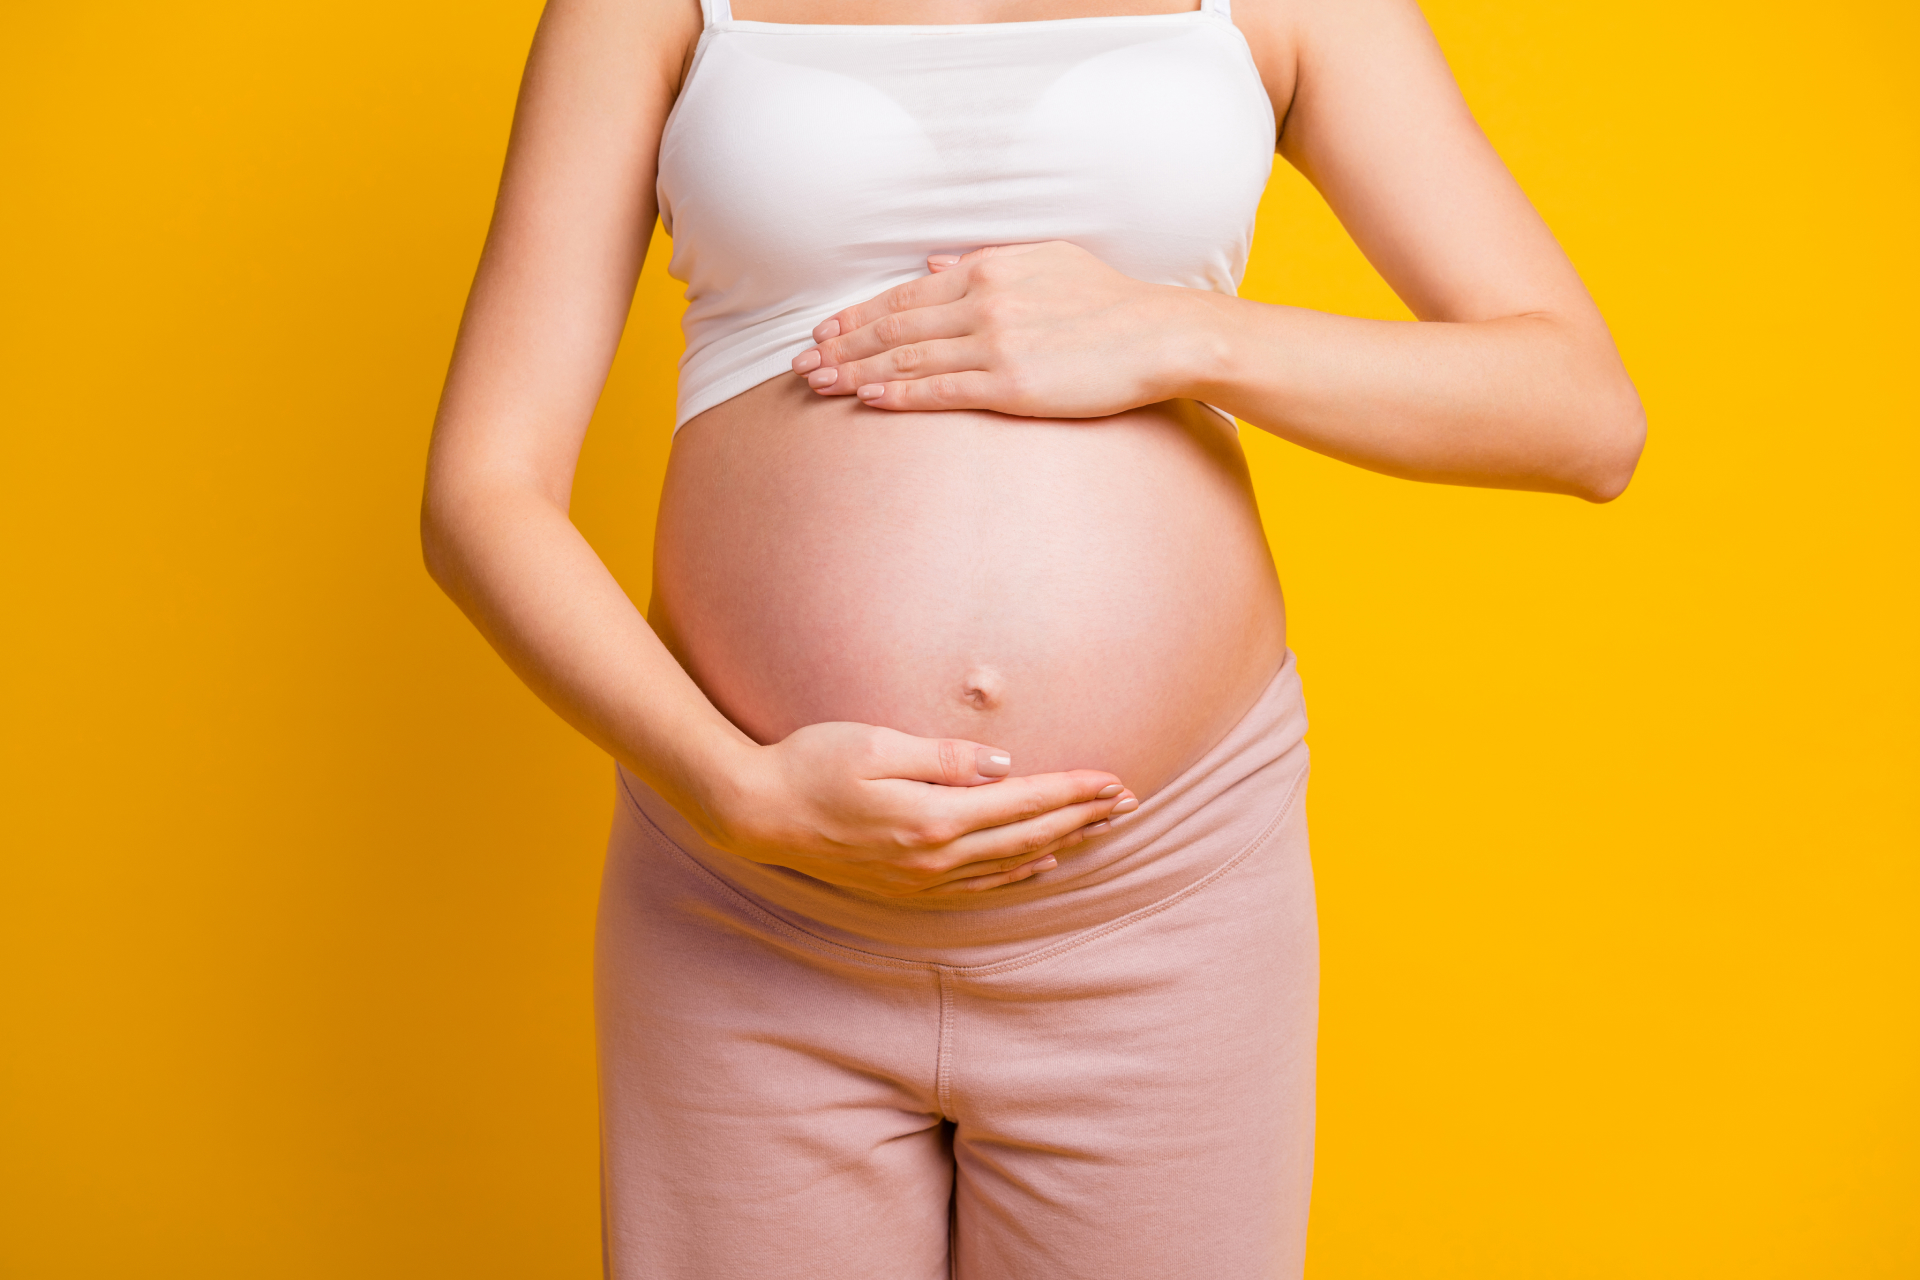 Ben fornito durante la gravidanza e l'allattamento